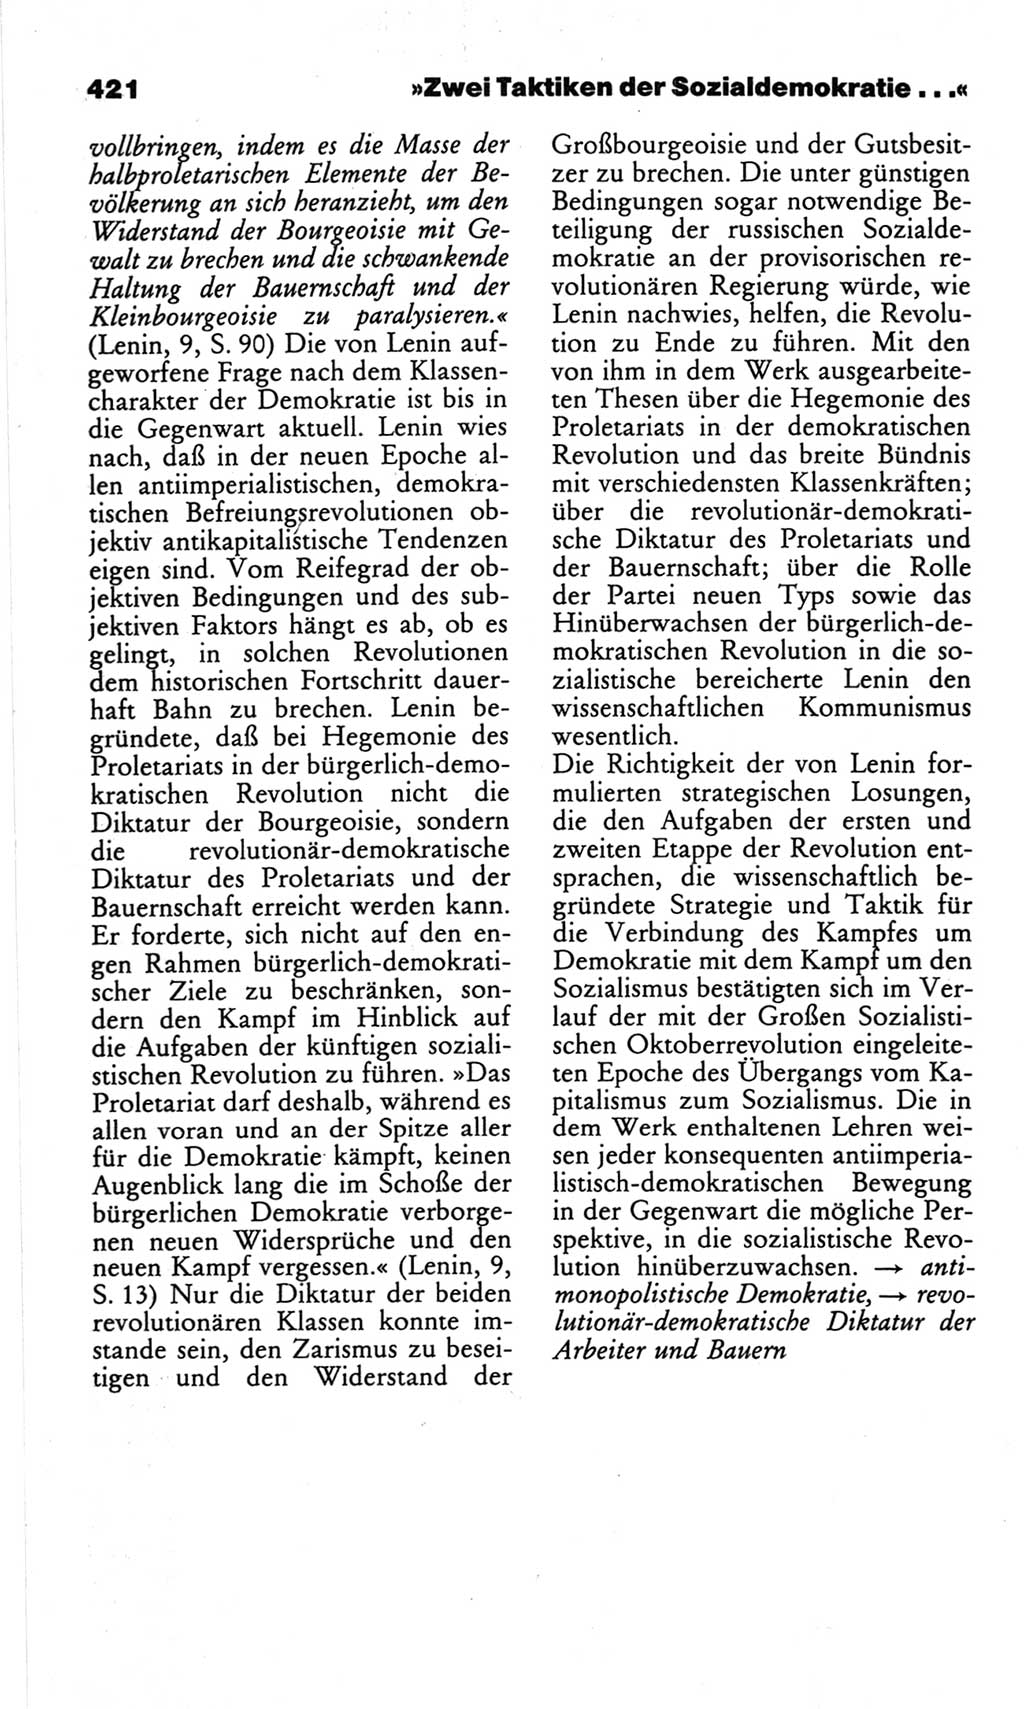 Wörterbuch des wissenschaftlichen Kommunismus [Deutsche Demokratische Republik (DDR)] 1982, Seite 421 (Wb. wiss. Komm. DDR 1982, S. 421)